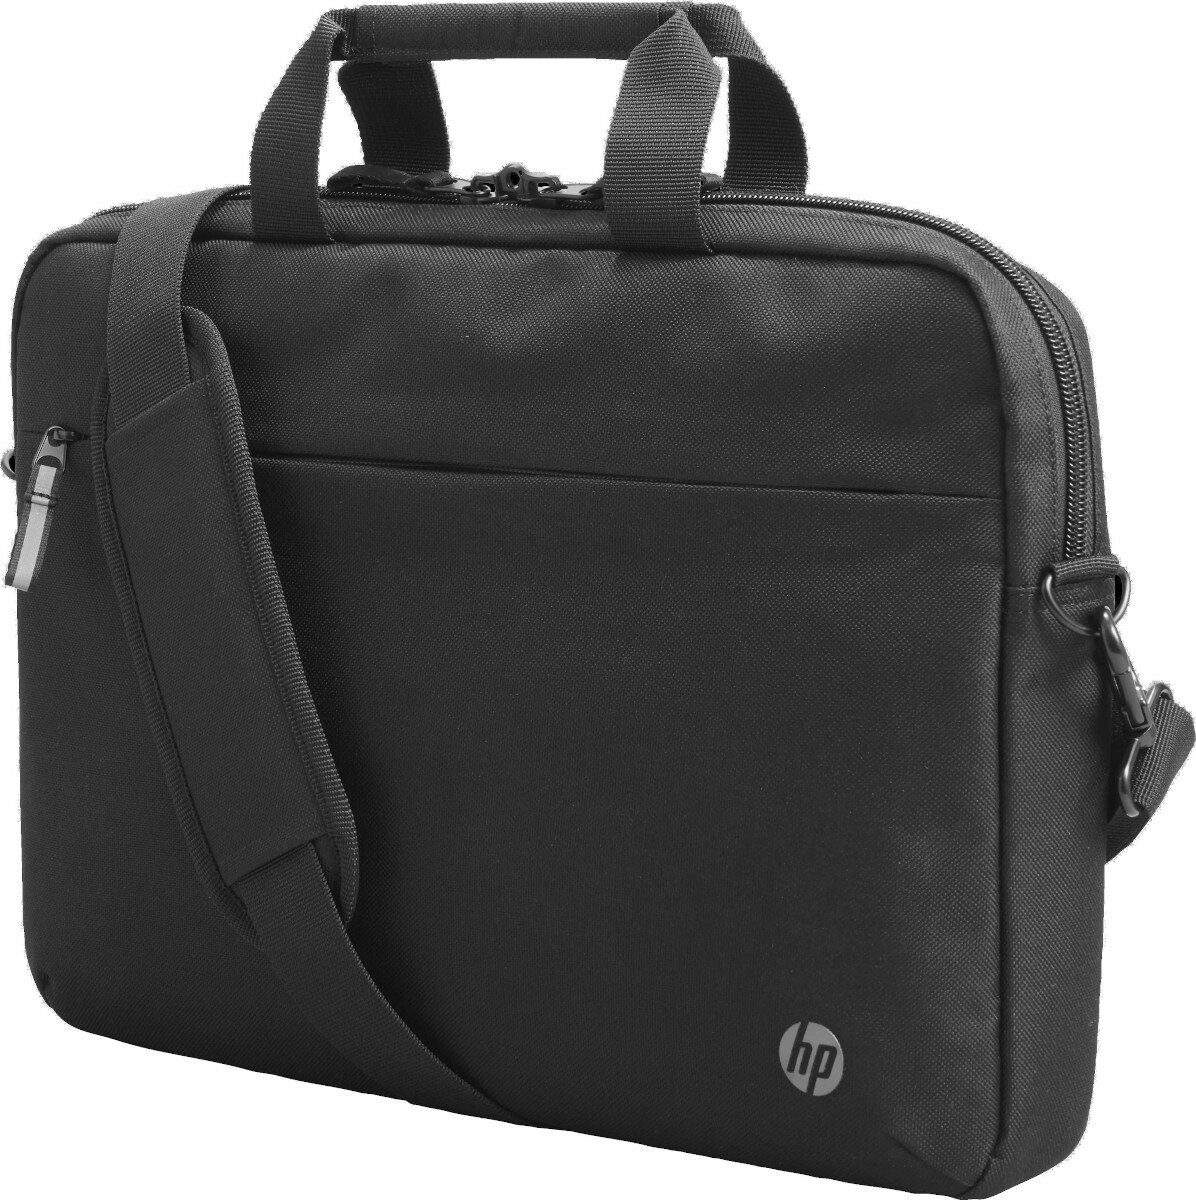 Torba na laptopa HP Renew Business zdjęcie torby pod skosem